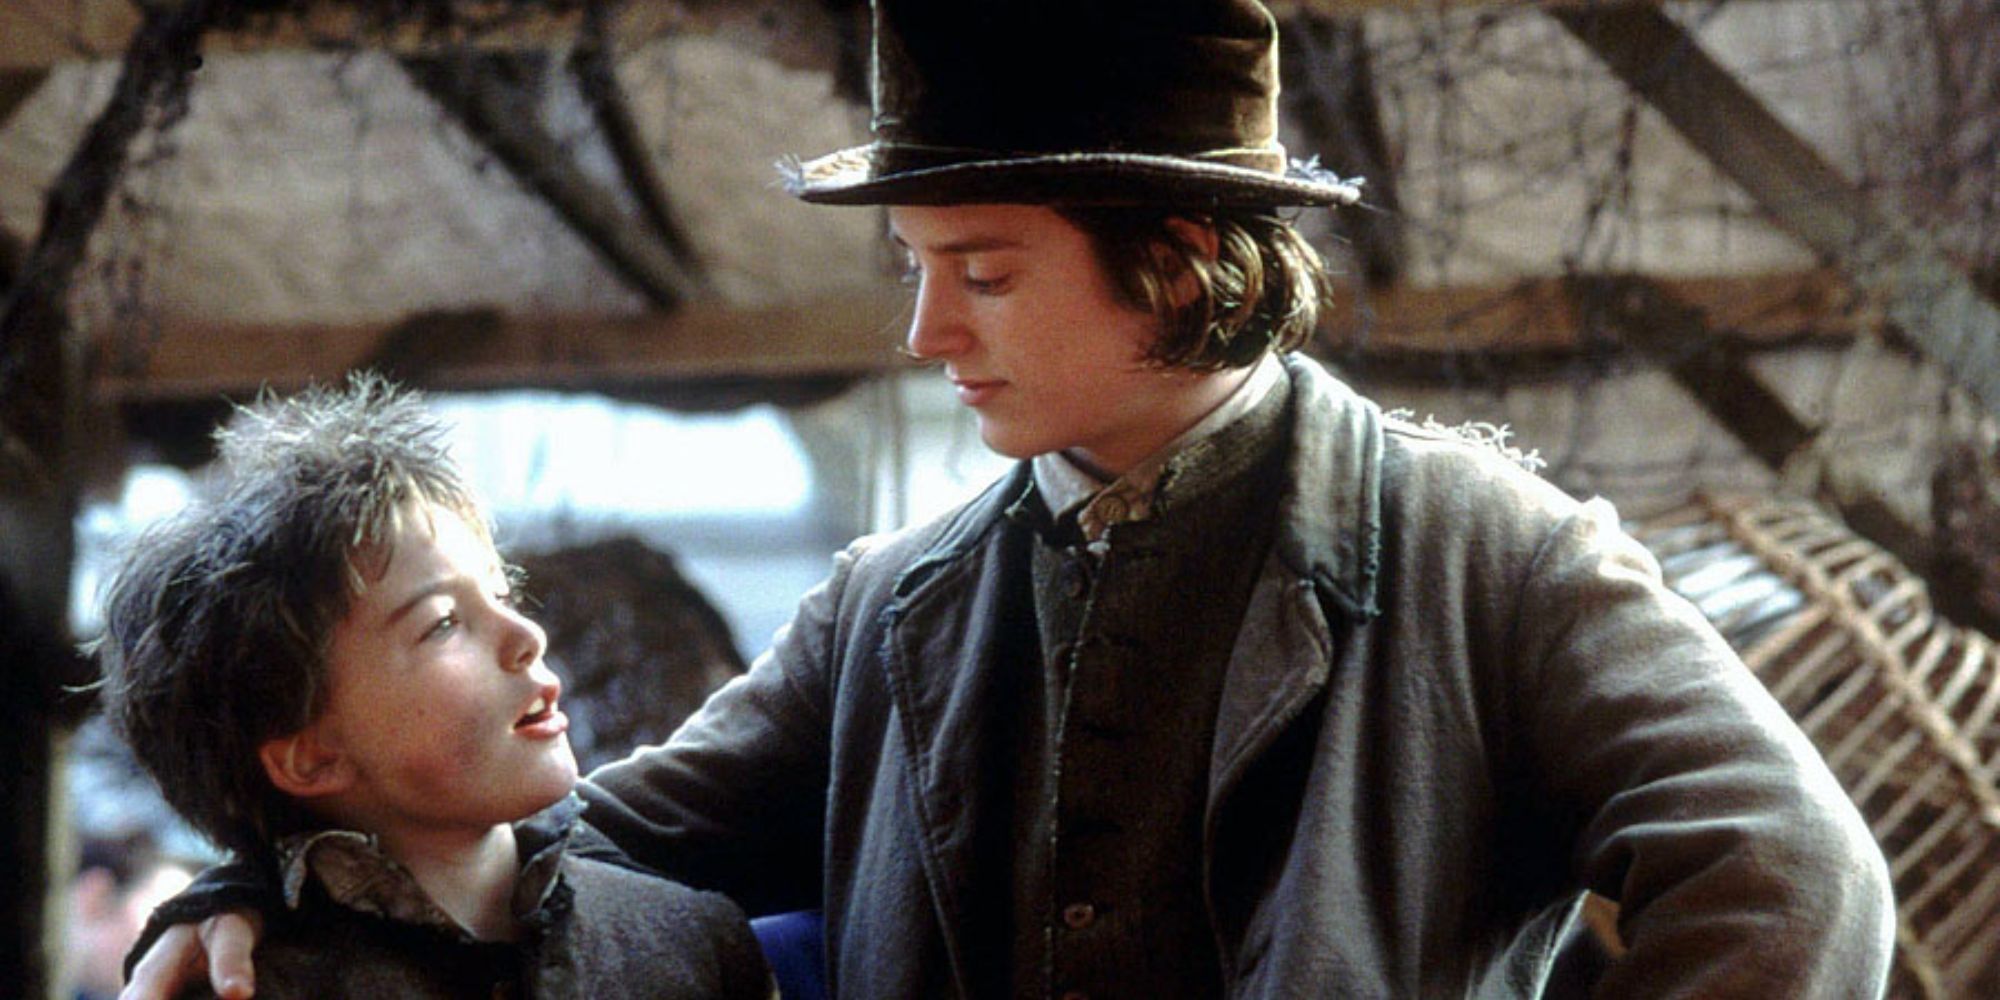 Elijah Wood as the Artful Dodger in Oliver Twist